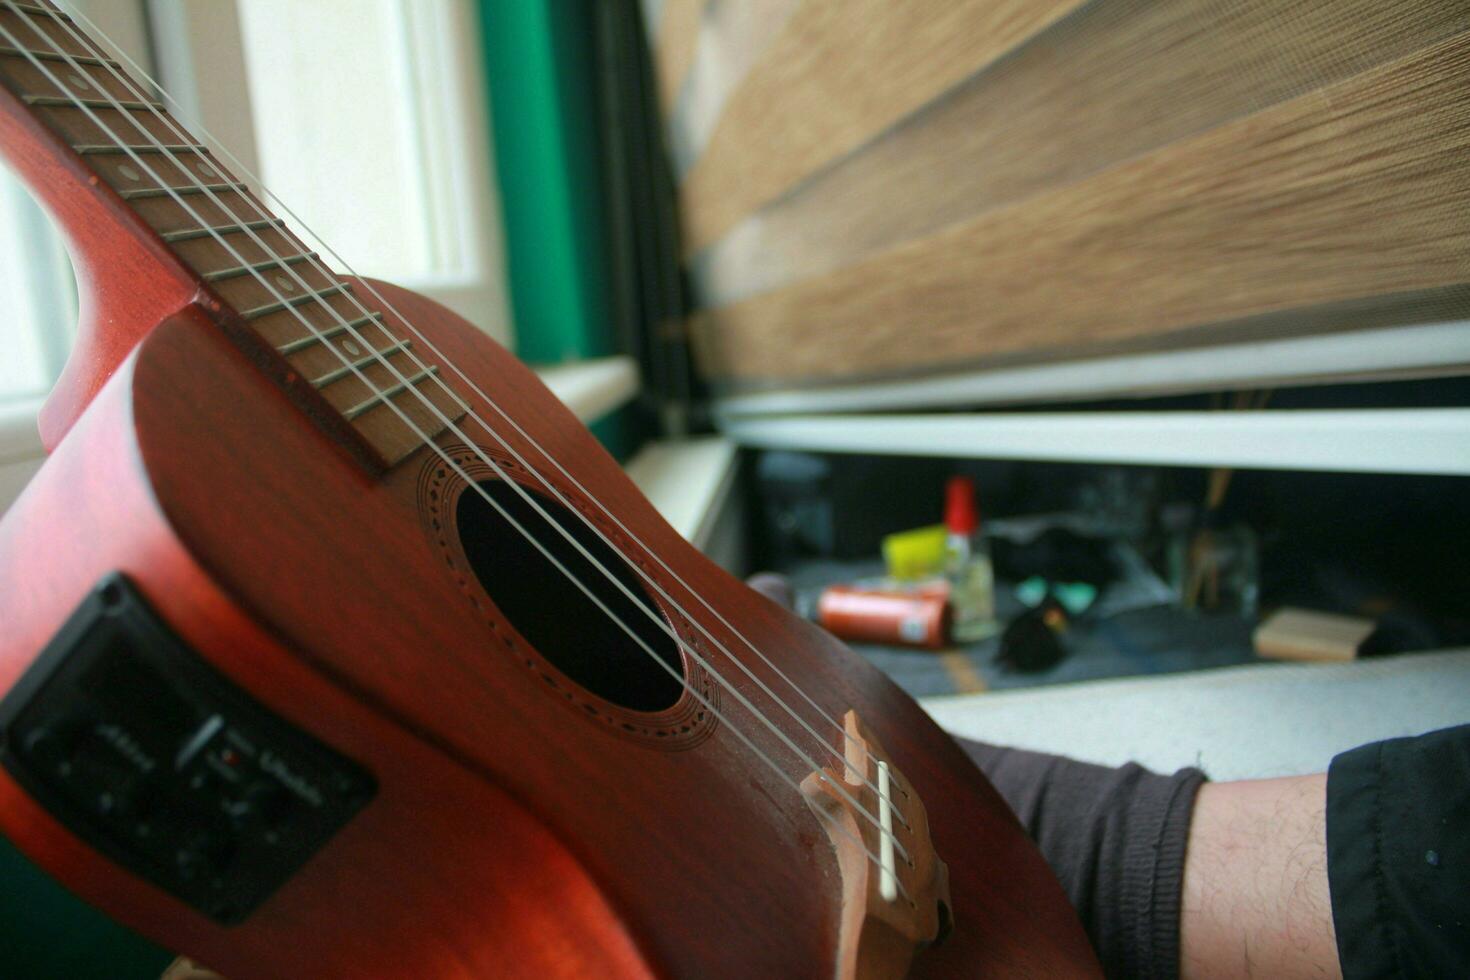 Ukulele guitar leaning against window as it finishes playing, May 7, 2023 Turkey photo